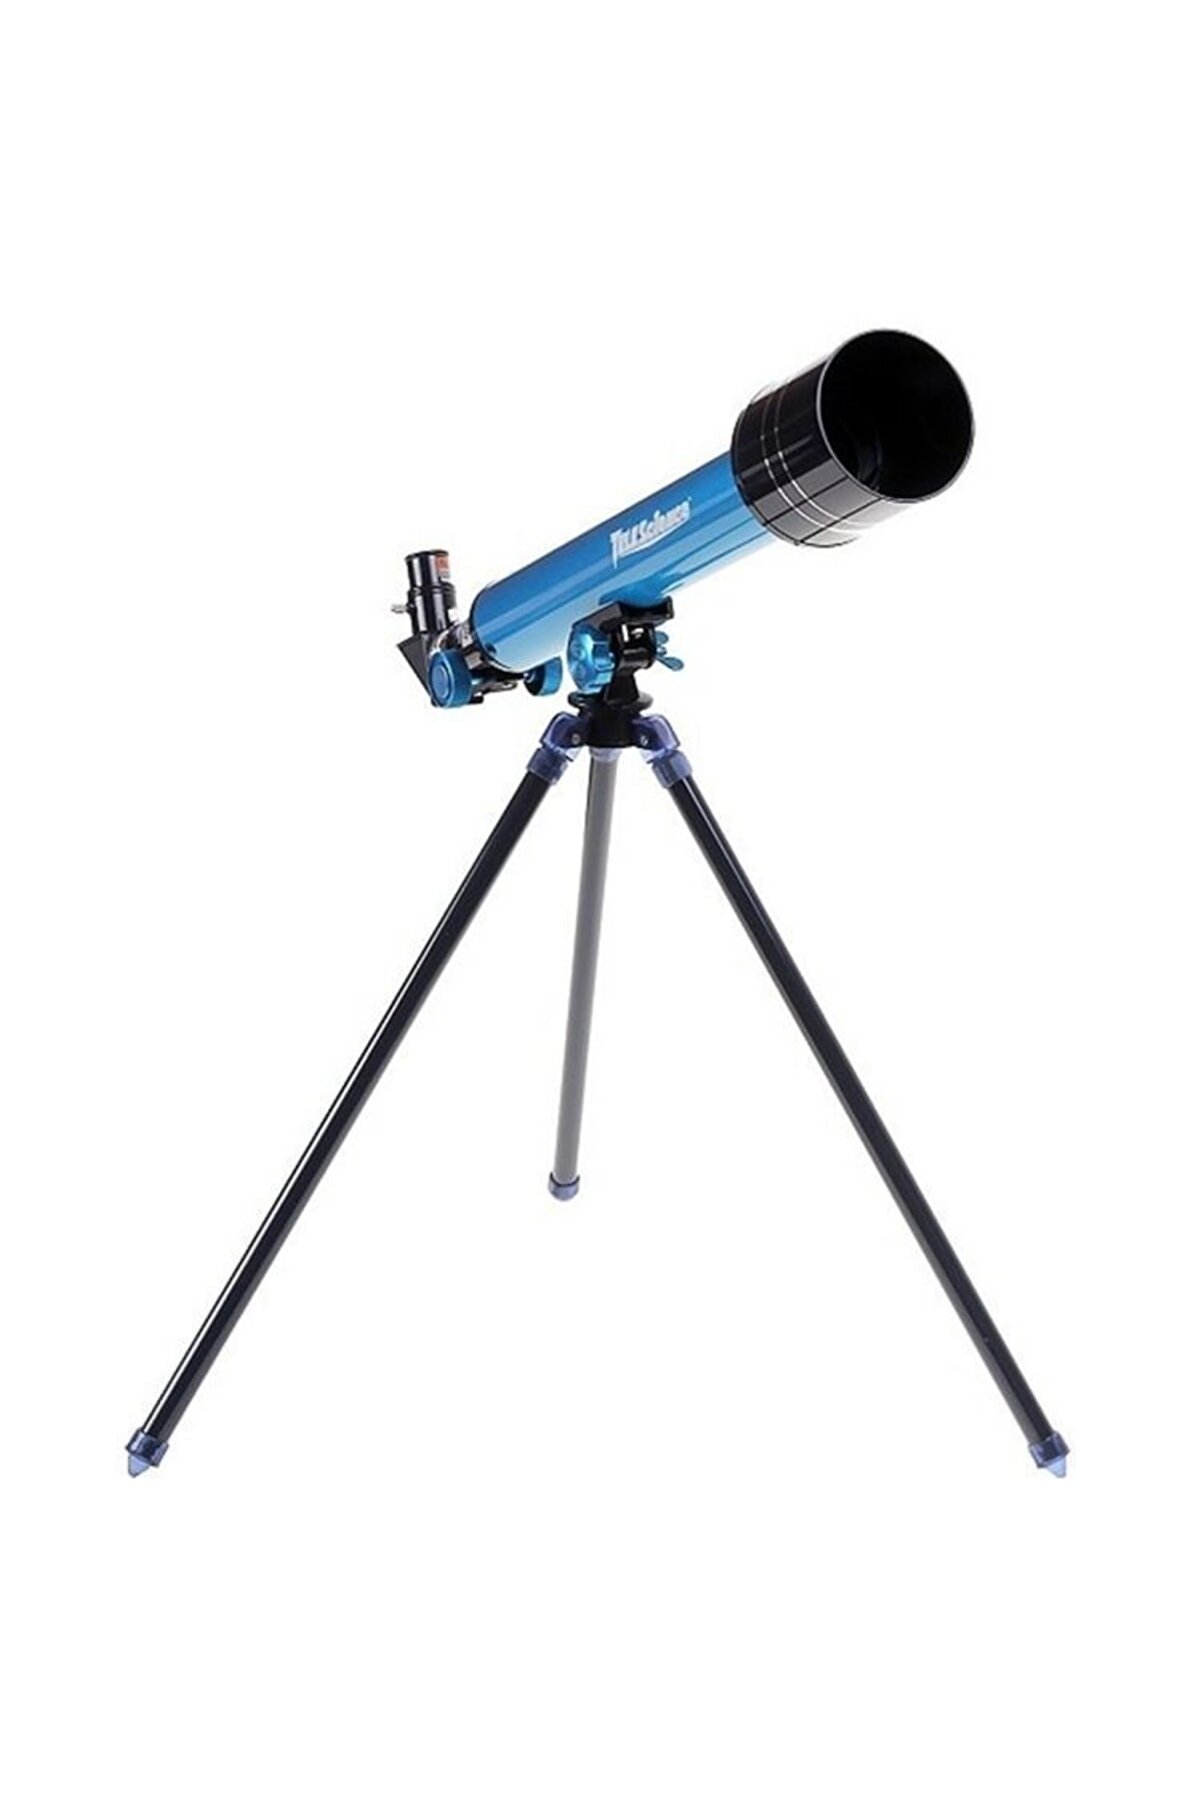 SAZE Astronomik Teleskop 2303